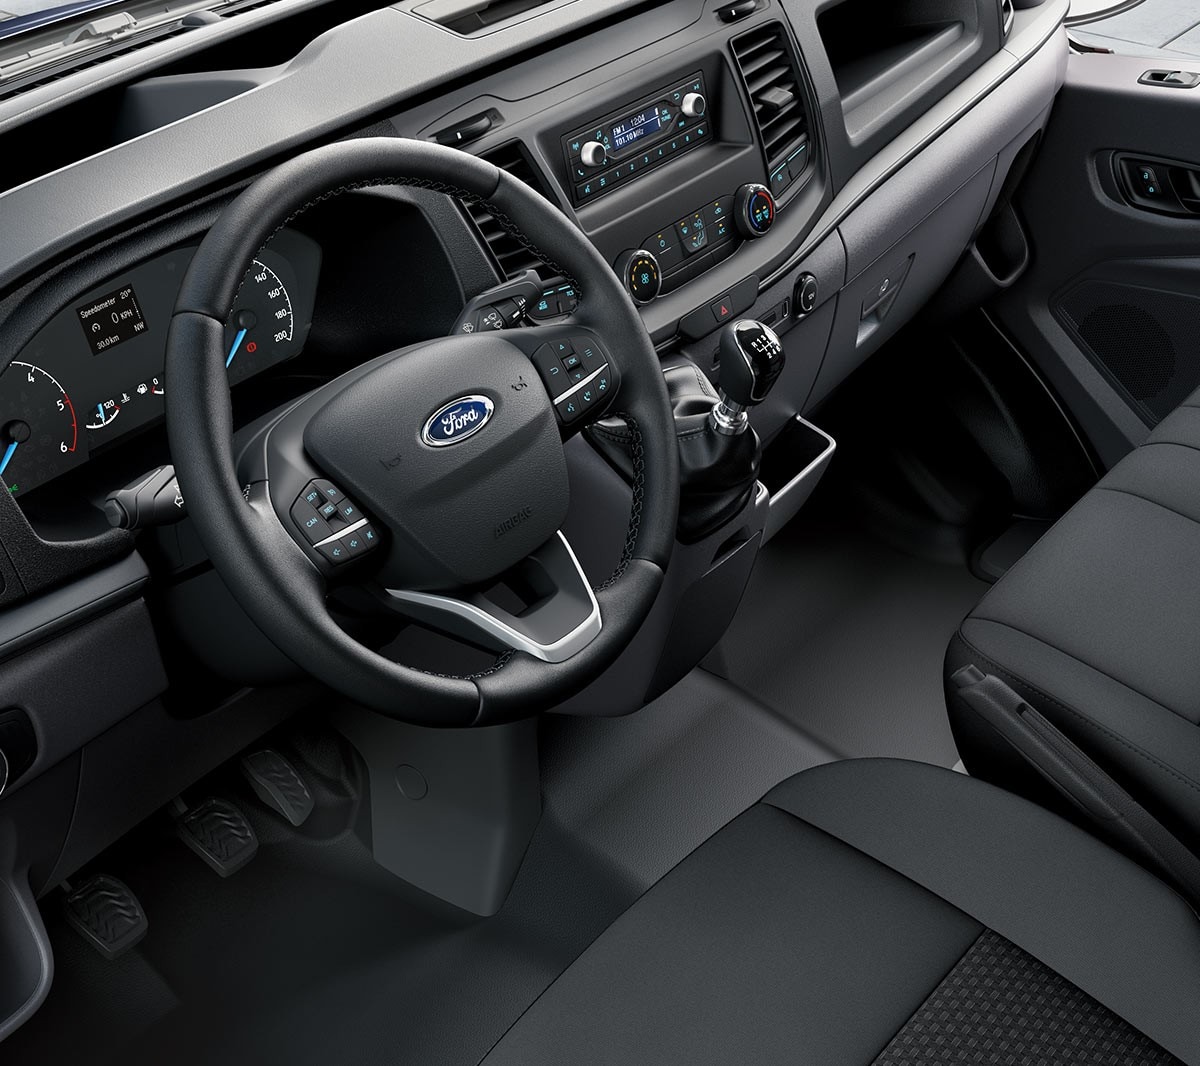 Vista completa do habitáculo e bancos dianteiros do Ford Transit Chassis Cabina